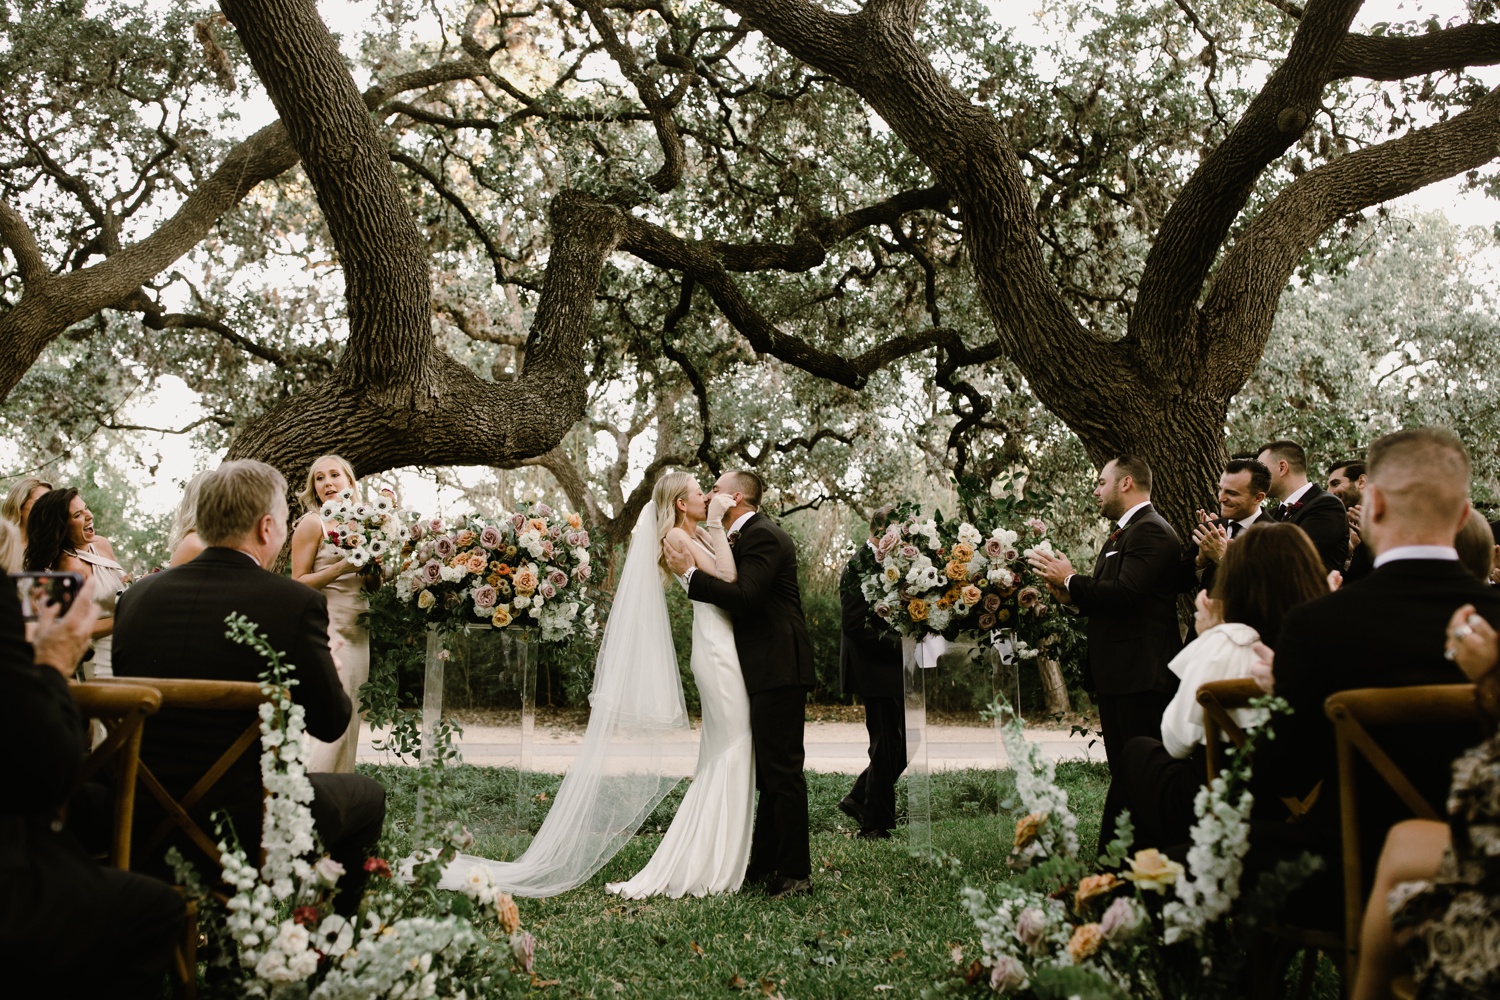 Outdoor wedding ceremony at Mattie's Austin